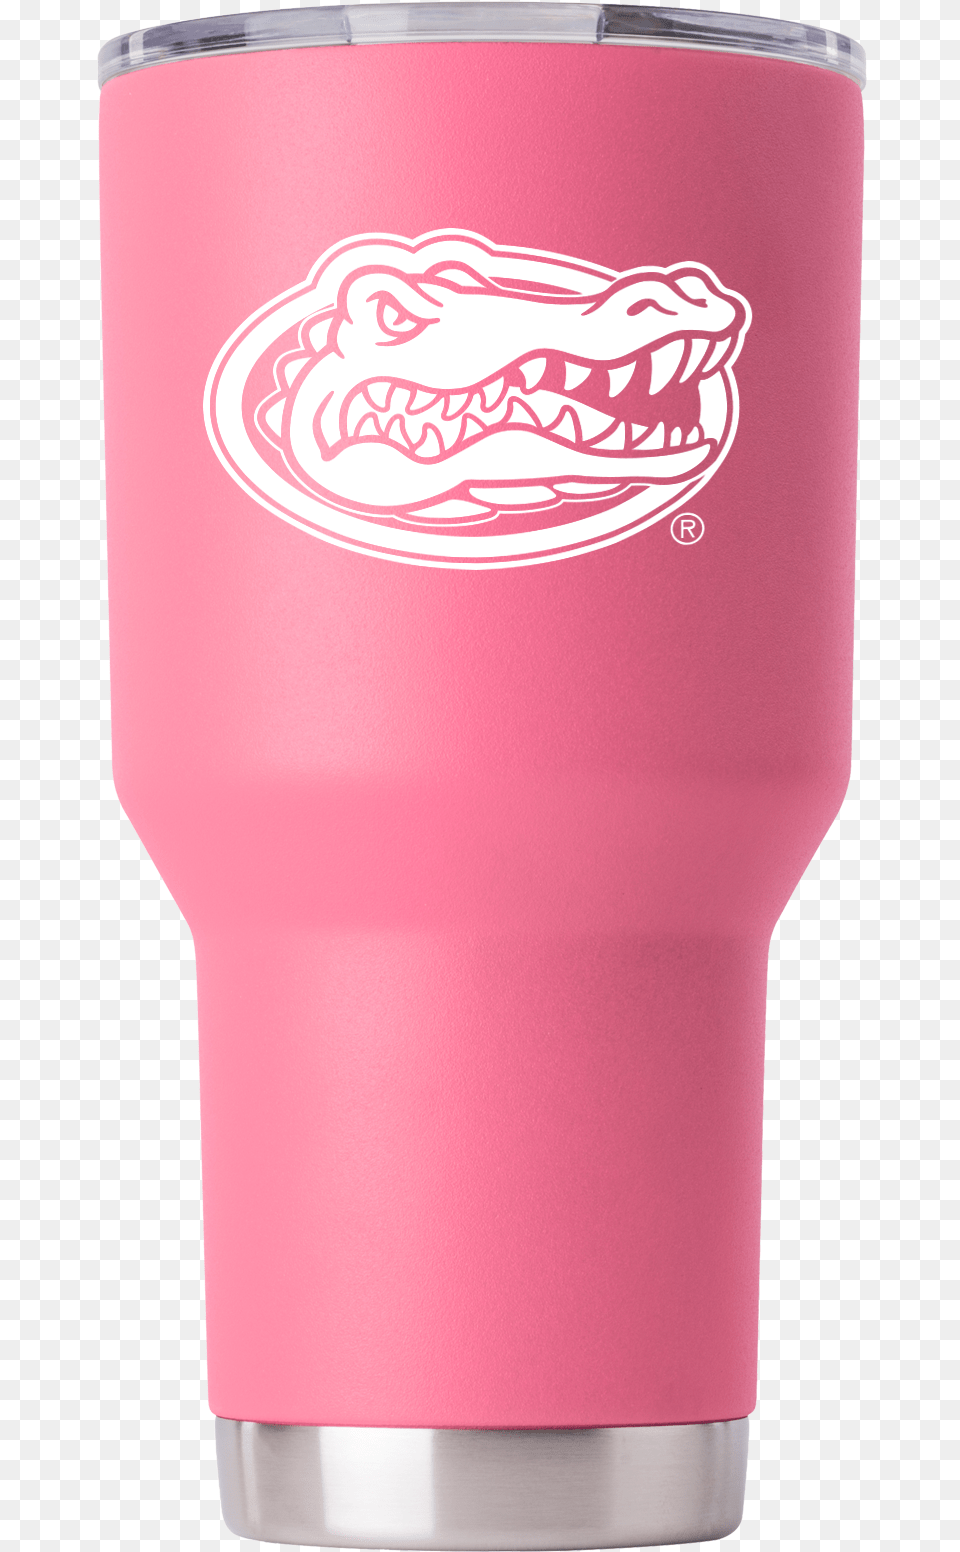 Florida Gator Head 30 Oz Pink Tumbler Florida Gators, Lamp, Glass, Can, Tin Png Image